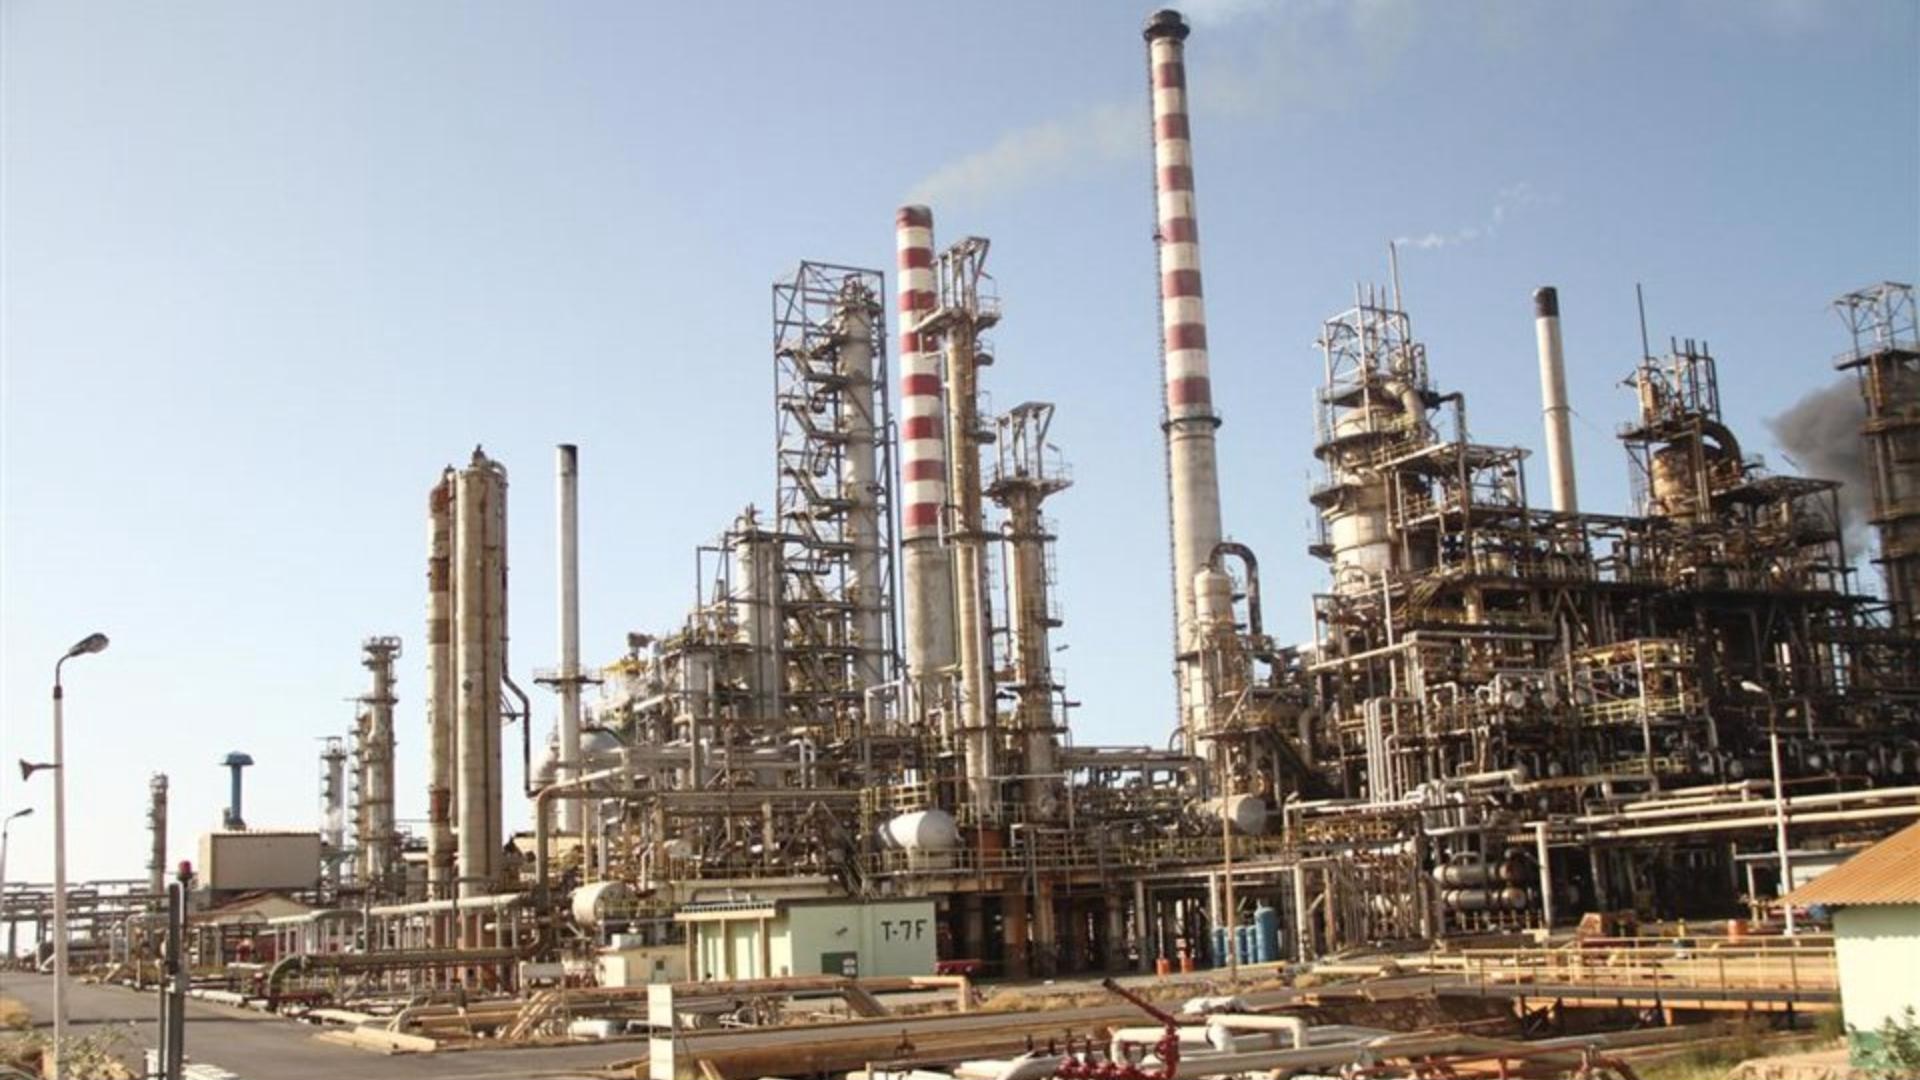 Ruptura del oleoducto Ulé reduce la producción de gasolina en la refinería Cardón